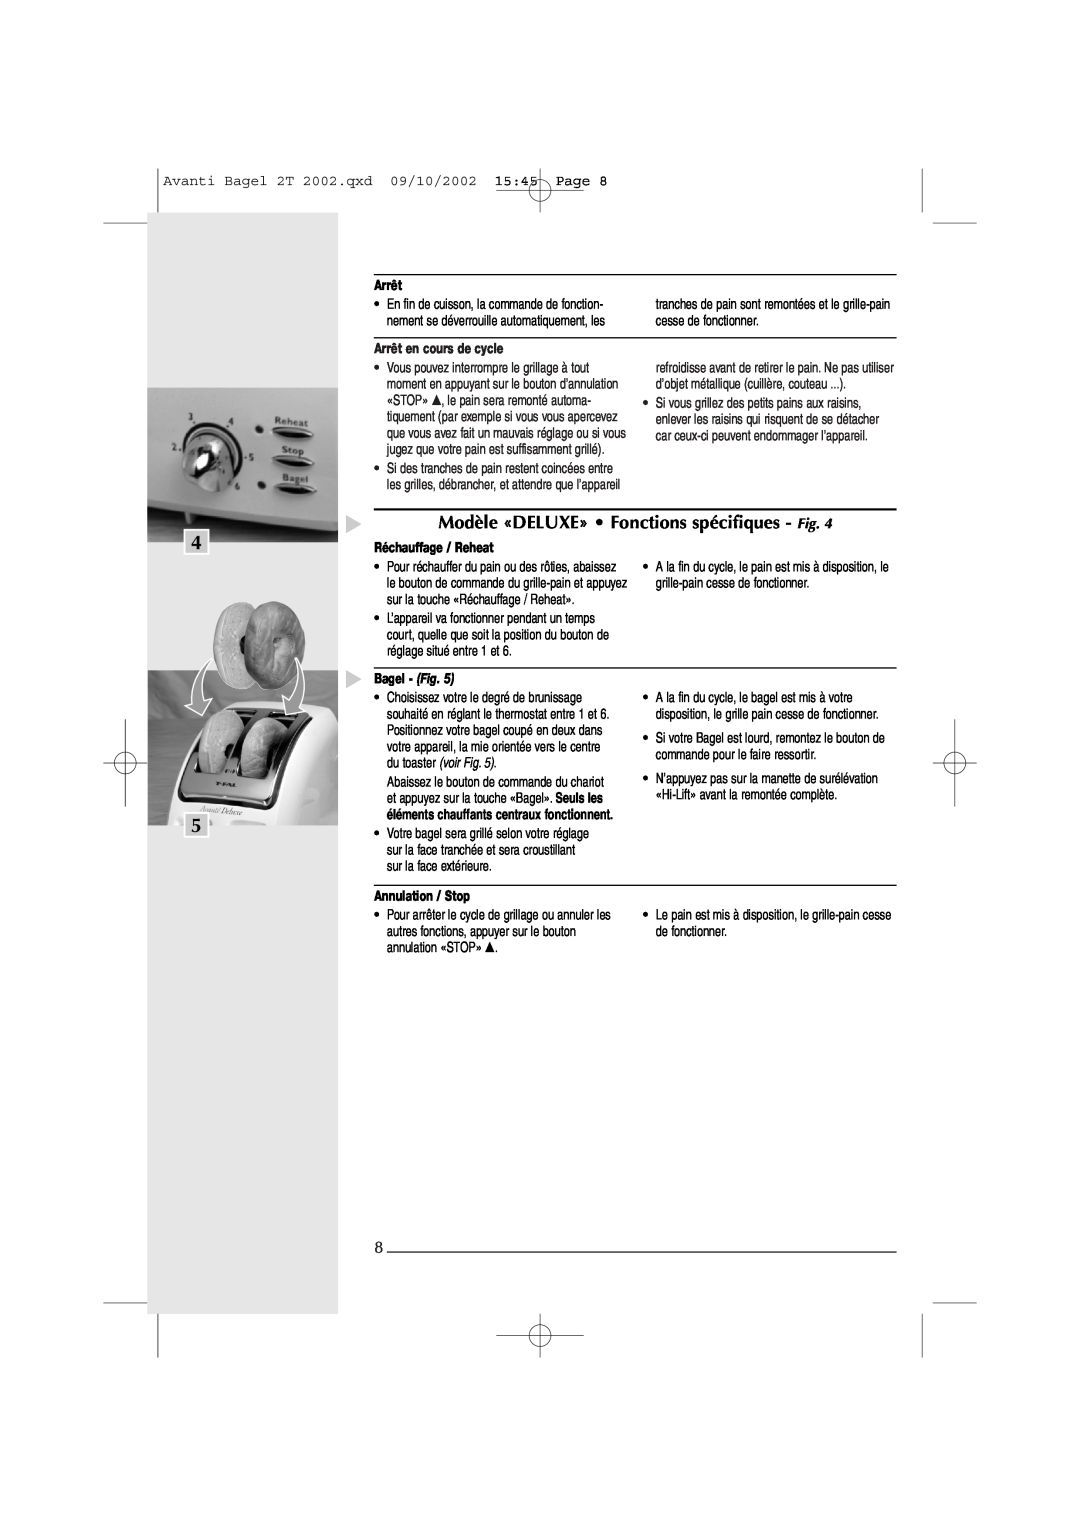 T-Fal Avante Deluxe Bagel Modèle «DELUXE» Fonctions spécifiques - Fig, Arrêt en cours de cycle, Réchauffage / Reheat 